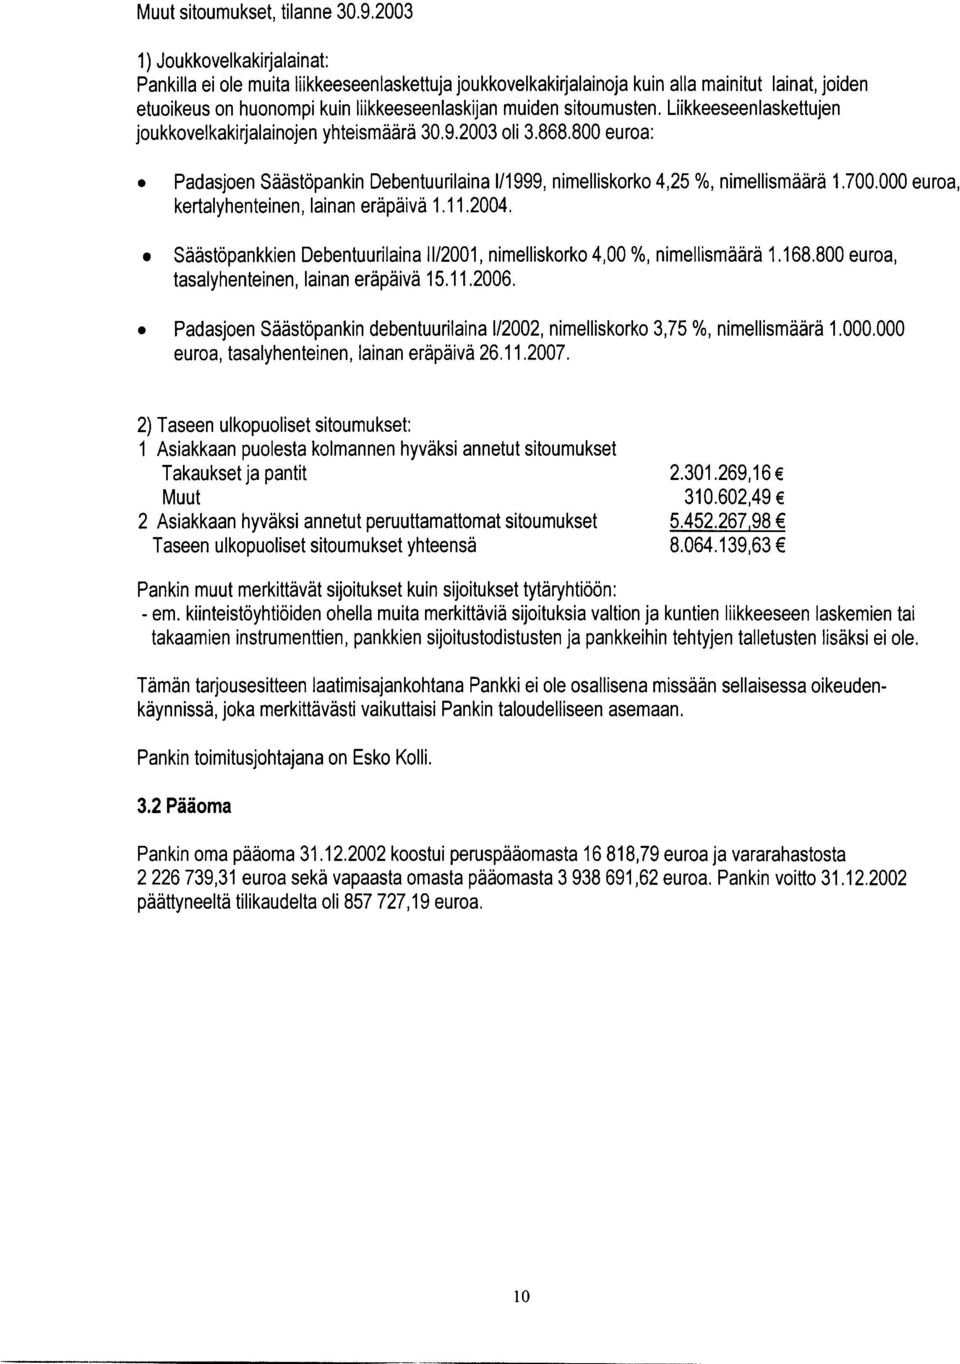 Liikkeeseenlaskettujen joukkovelkakirjalainojen yhteismäärä 30.9.2003 oli 3.868.800 euroa: 0 Padasjoen Säästöpankin Debentuurilaina 111 999, nimelliskorko 4,25 %, nimellismäärä 1.700.